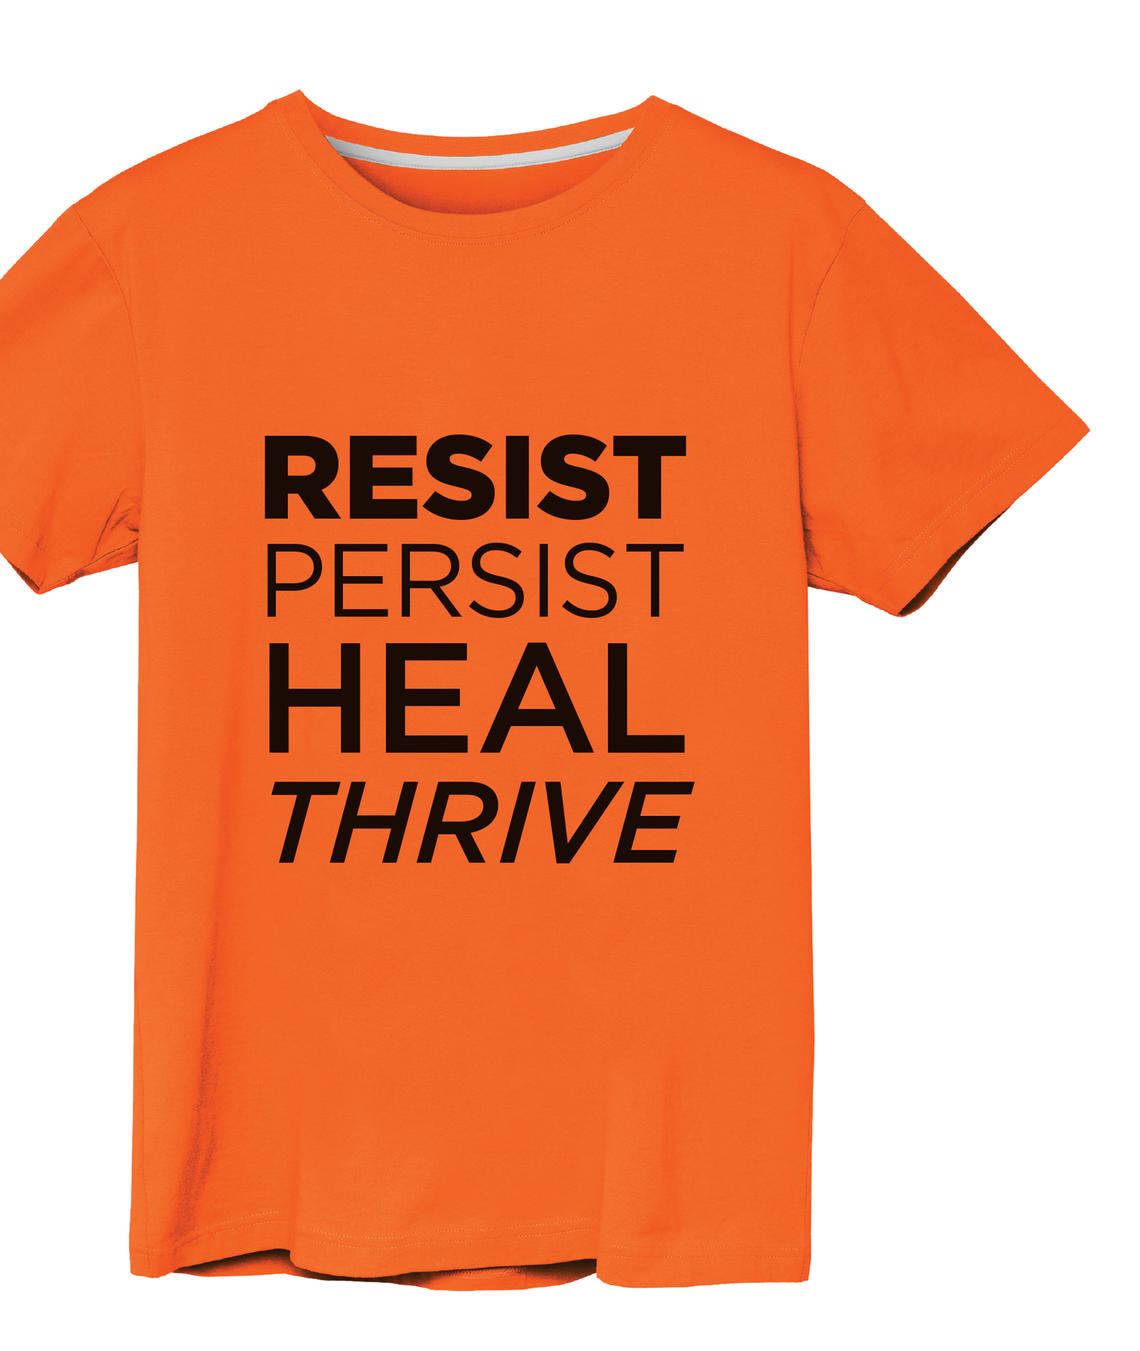 resist persist heal thrive